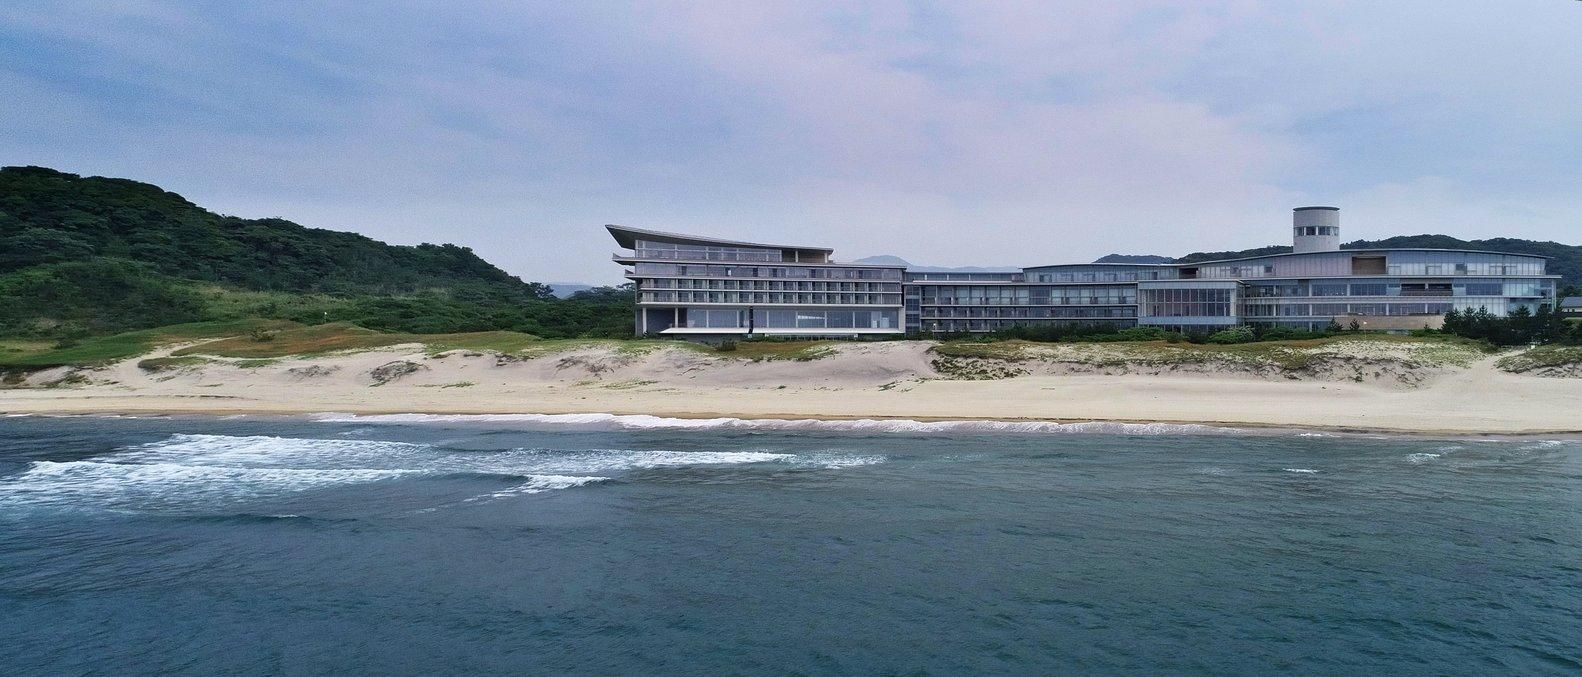 Работа под шум моря: в Японии построили офисный комплекс возле пляжа – фото